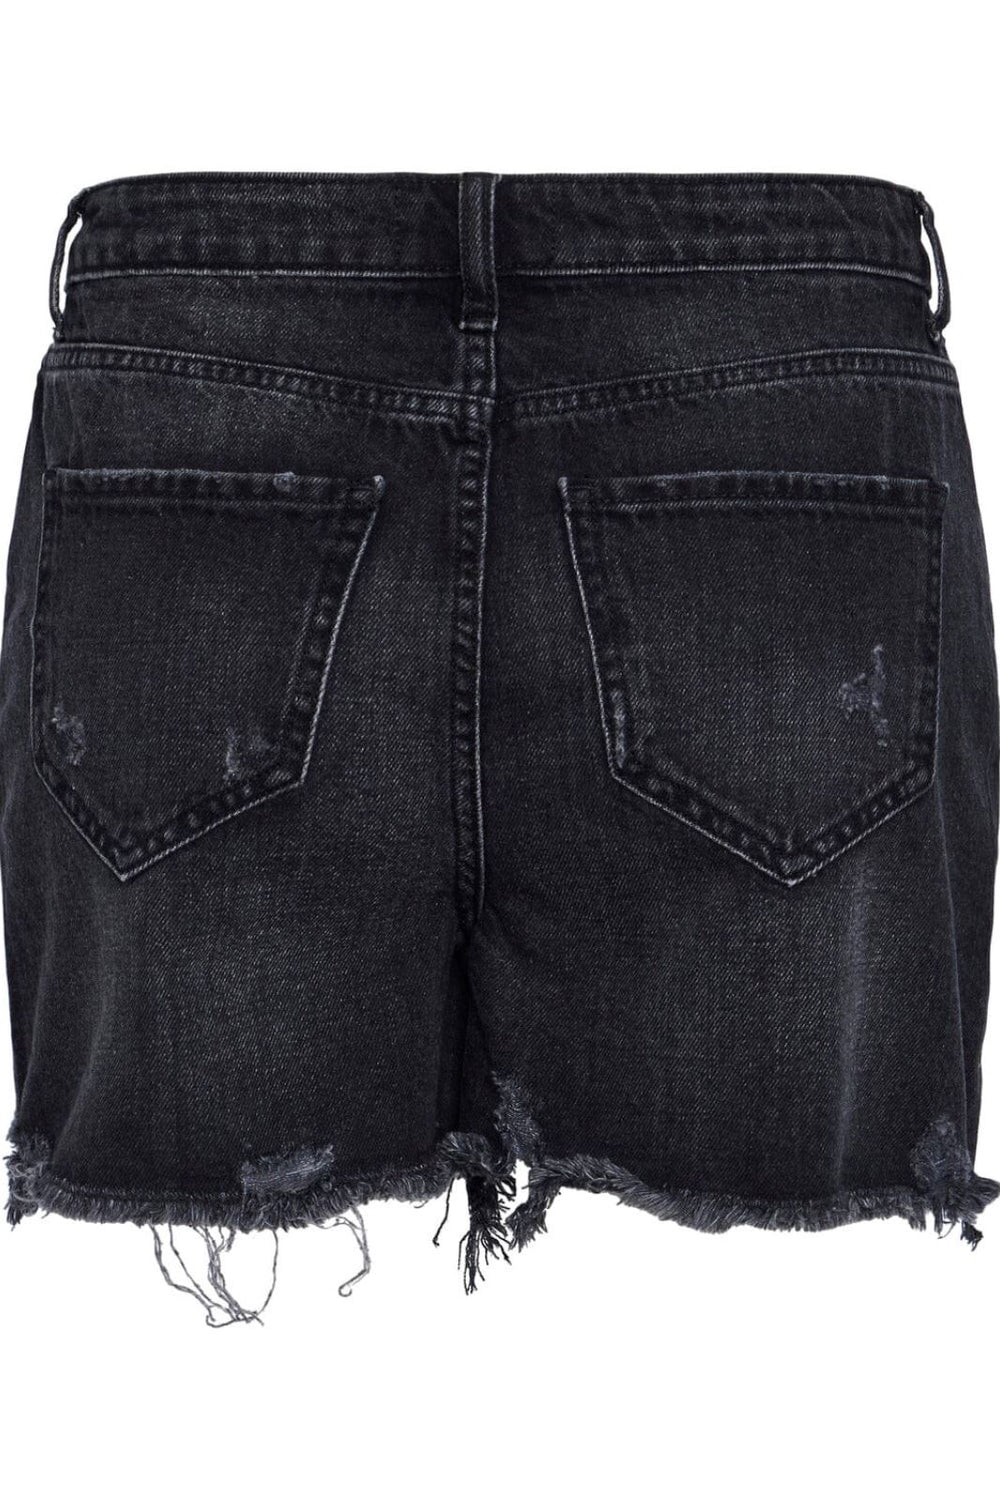 Pieces - Pcsummer Dest Blc Shorts - 4405832 Black Shorts 